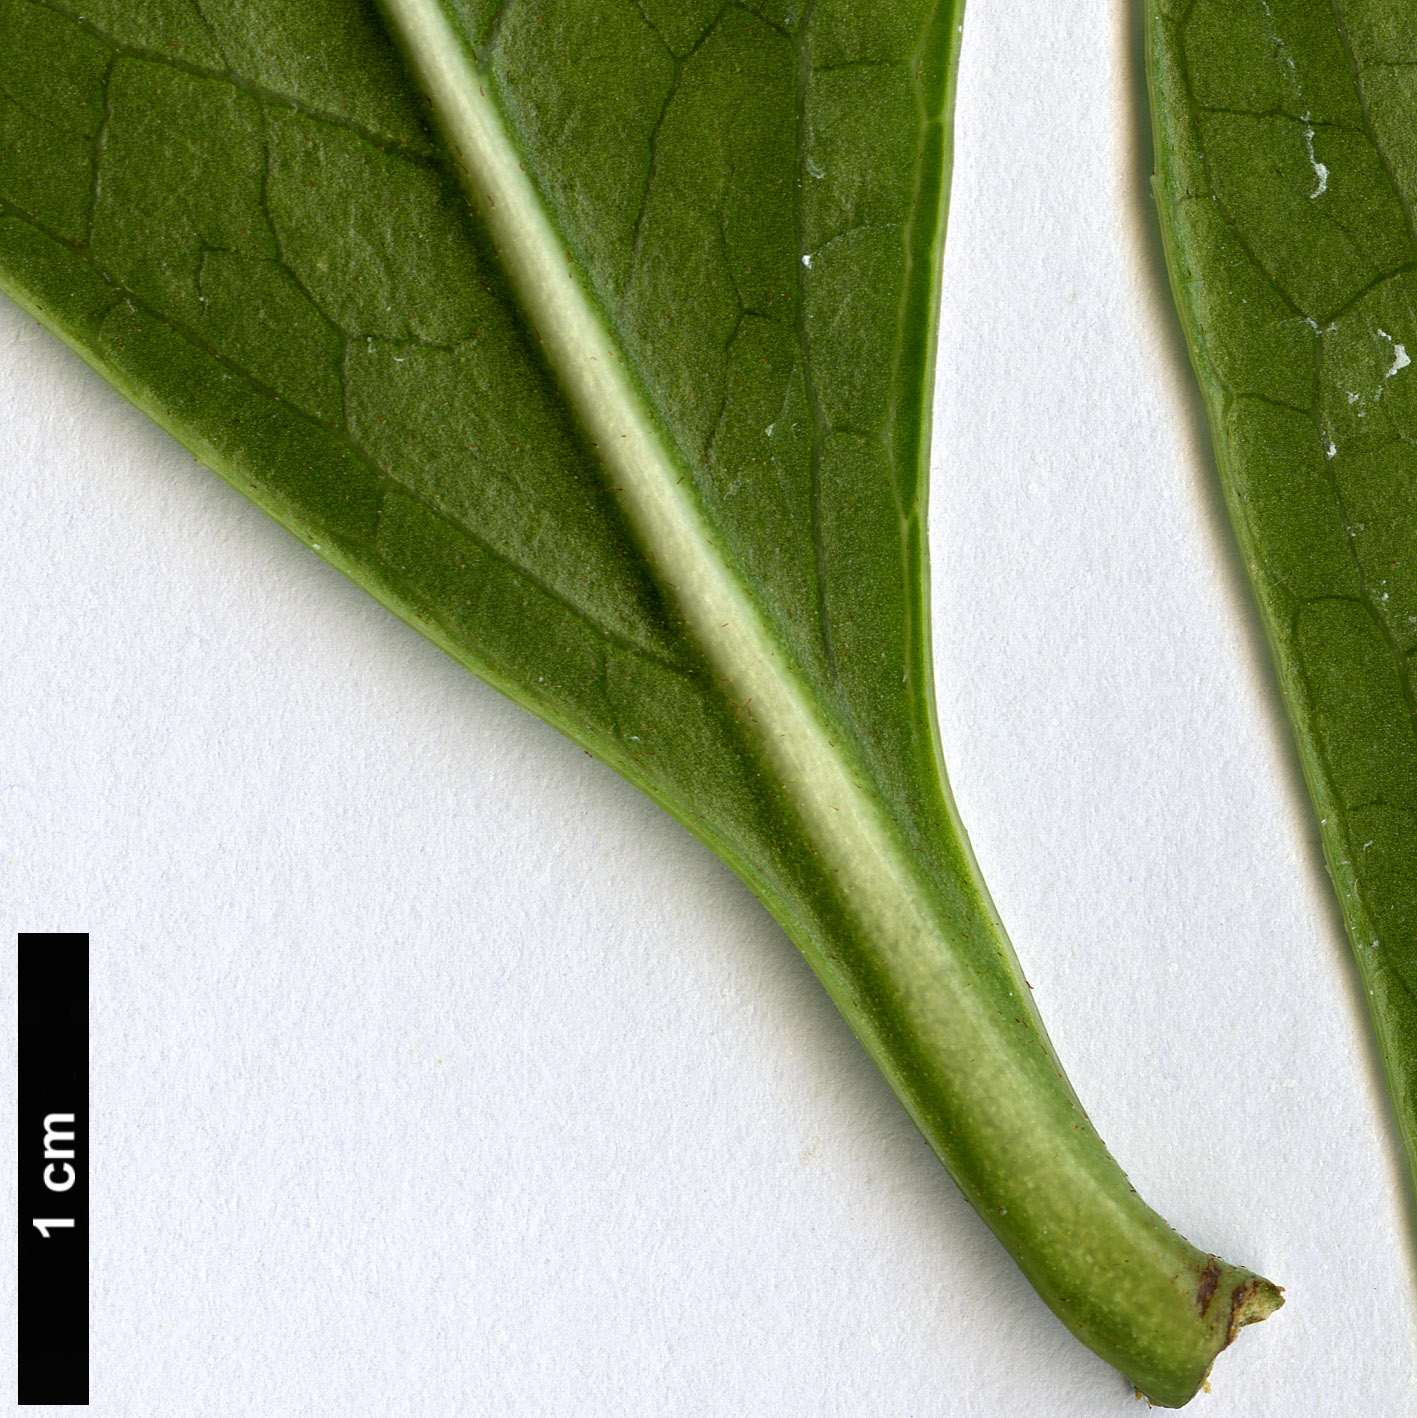 High resolution image: Family: Ericaceae - Genus: Enkianthus - Taxon: quinqueflorus